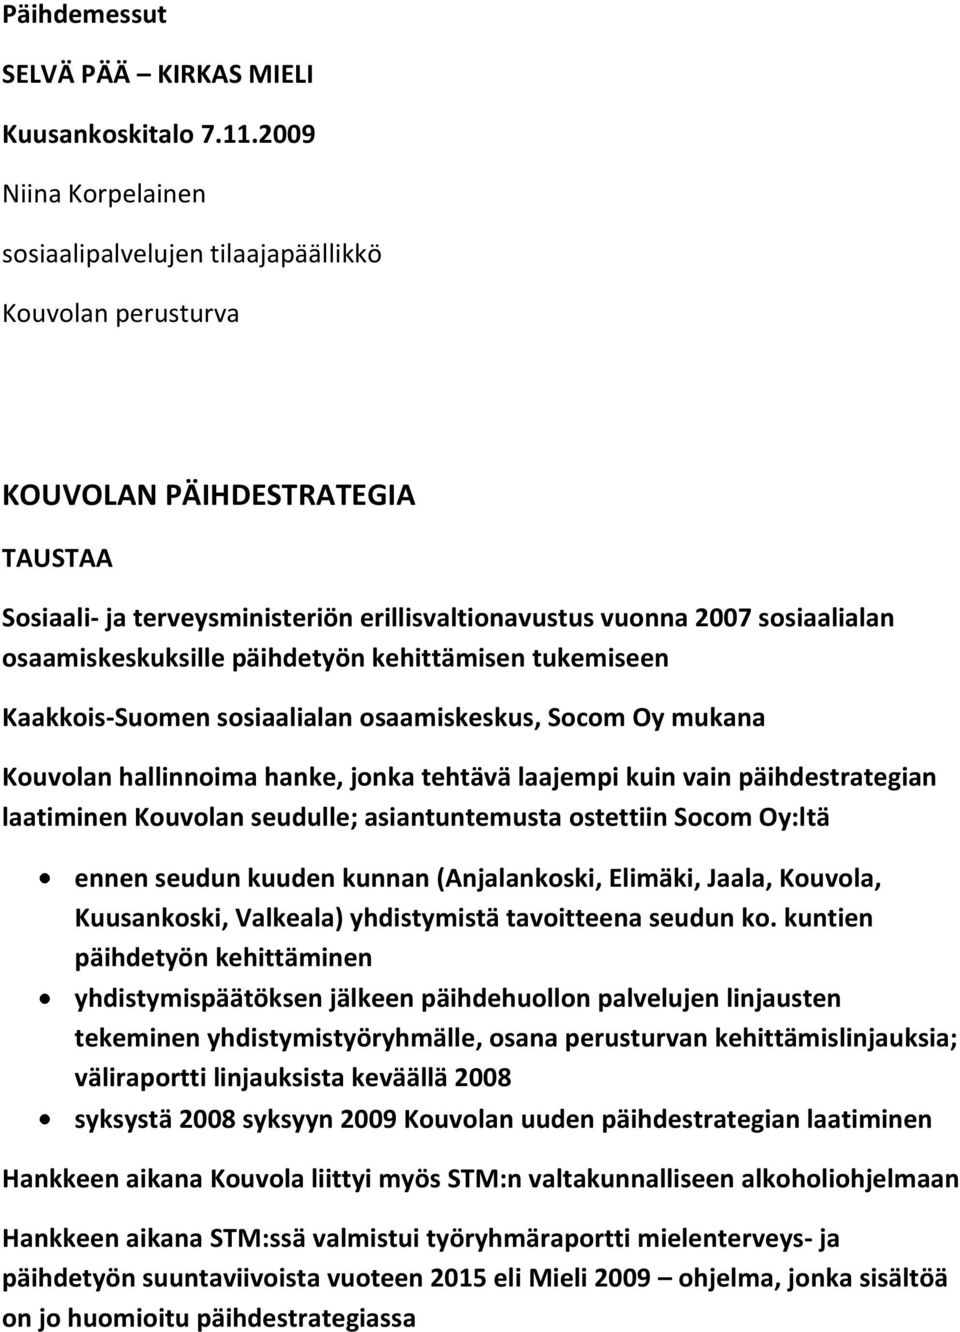 osaamiskeskuksille päihdetyön kehittämisen tukemiseen Kaakkois-Suomen sosiaalialan osaamiskeskus, Socom Oy mukana Kouvolan hallinnoima hanke, jonka tehtävä laajempi kuin vain päihdestrategian